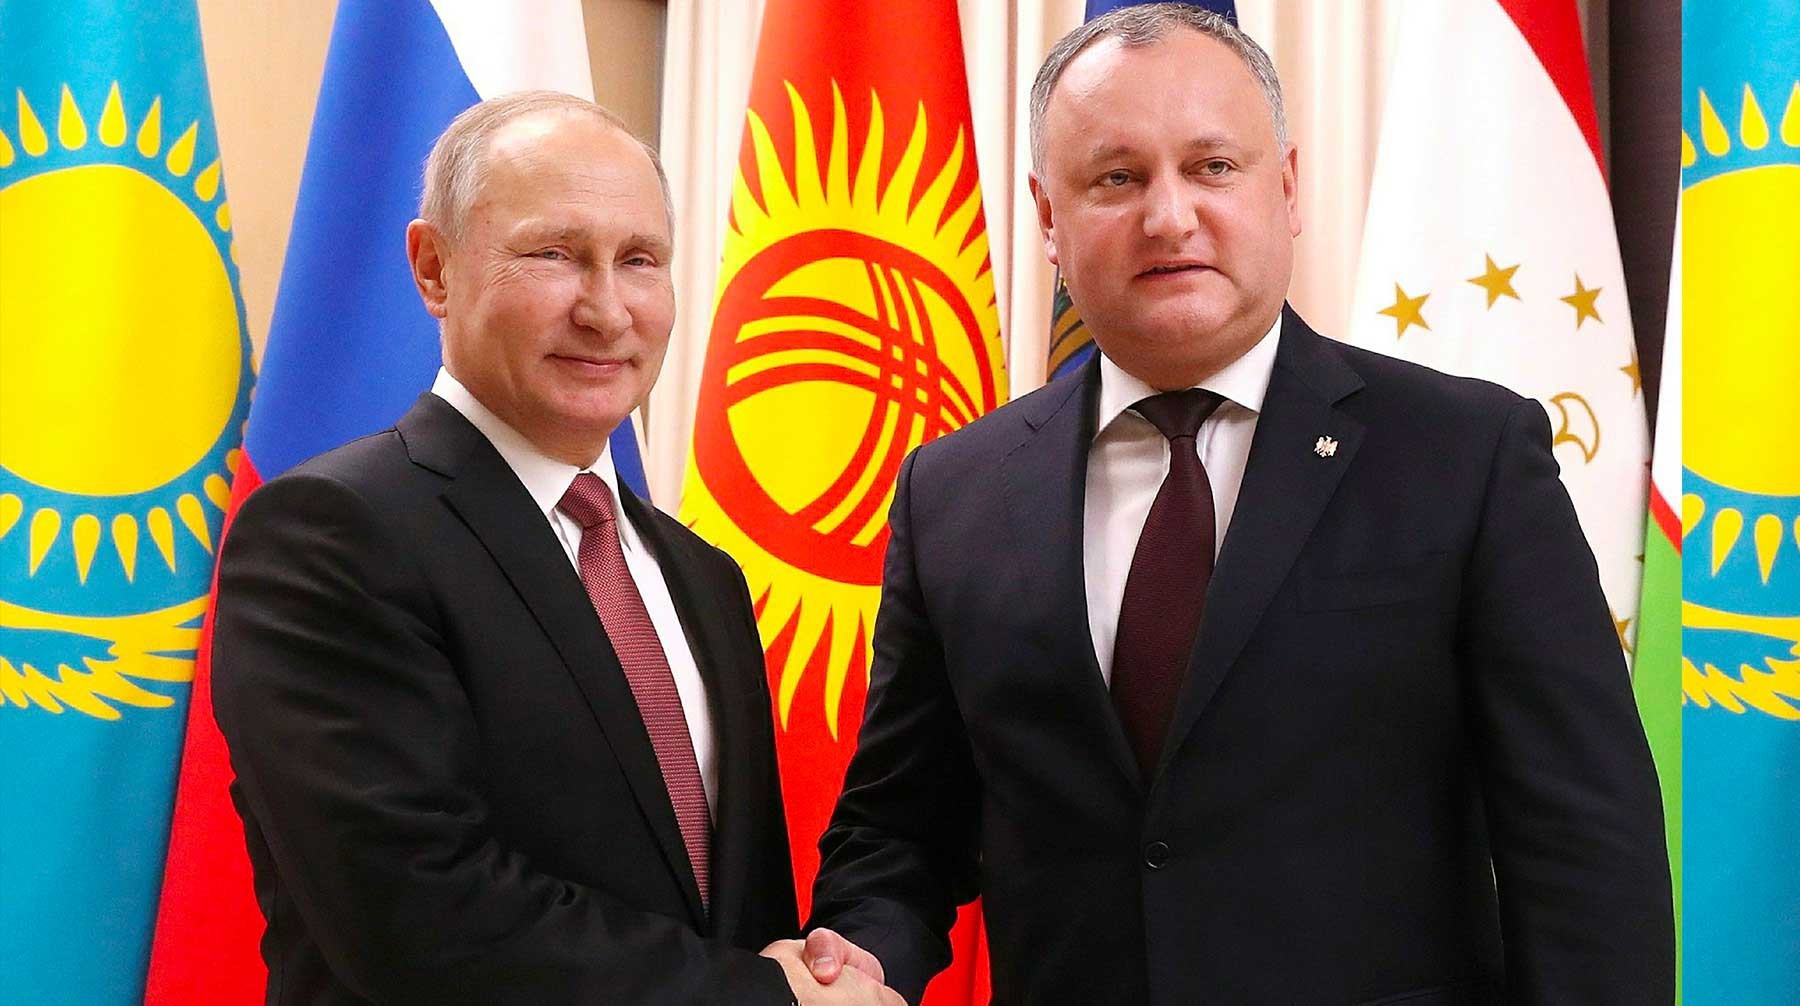 Dailystorm - Додон договорился с Путиным о транзите молдавских товаров через Украину